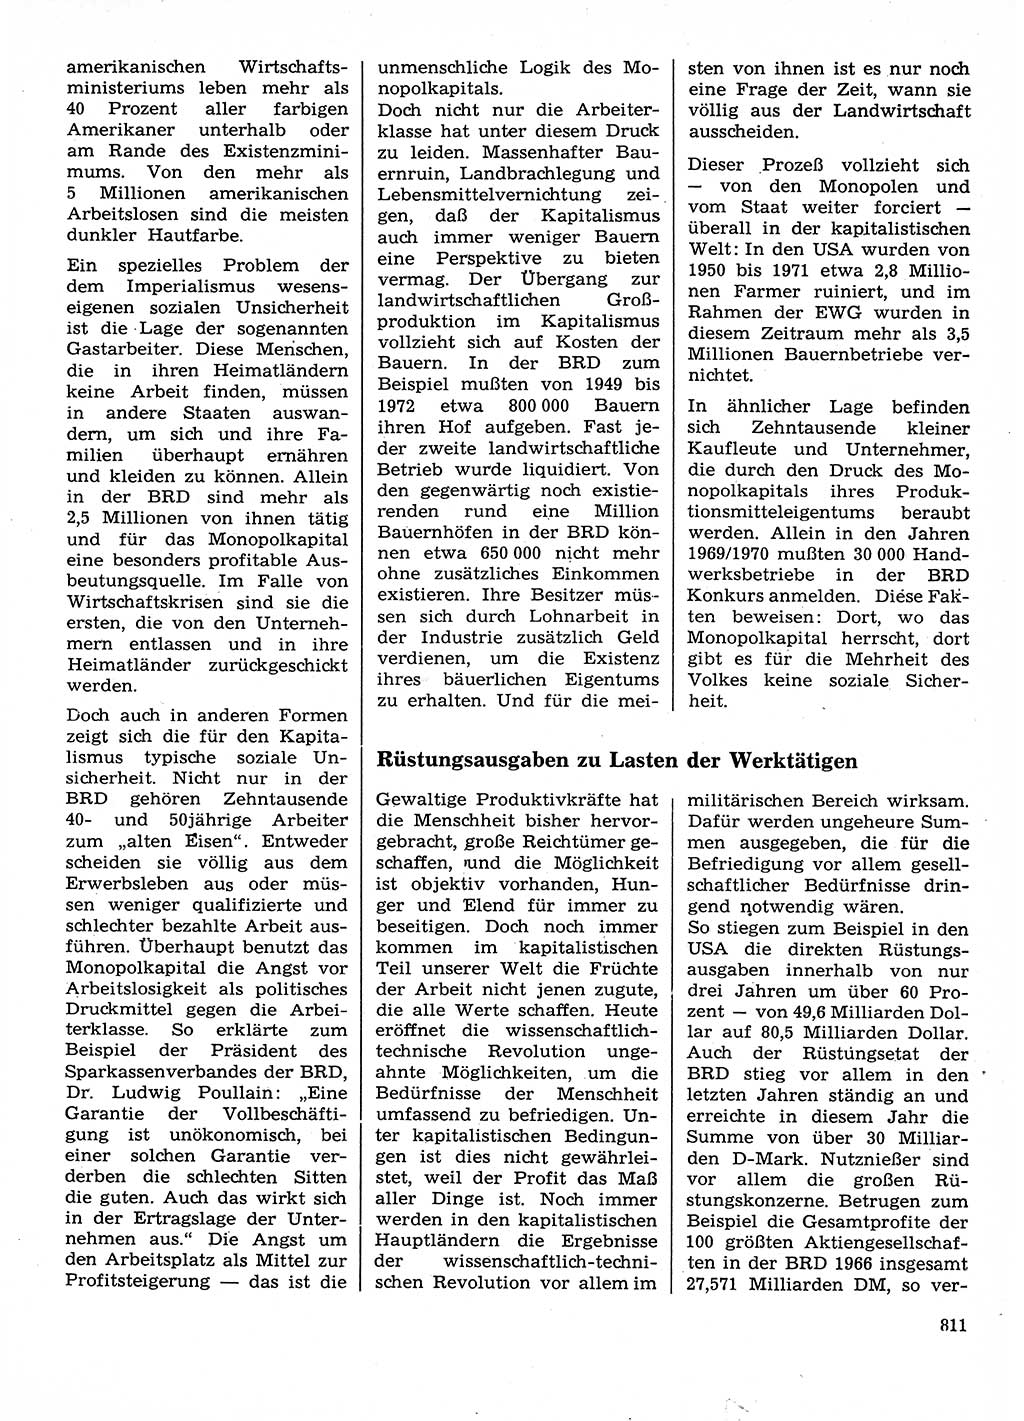 Neuer Weg (NW), Organ des Zentralkomitees (ZK) der SED (Sozialistische Einheitspartei Deutschlands) für Fragen des Parteilebens, 28. Jahrgang [Deutsche Demokratische Republik (DDR)] 1973, Seite 811 (NW ZK SED DDR 1973, S. 811)